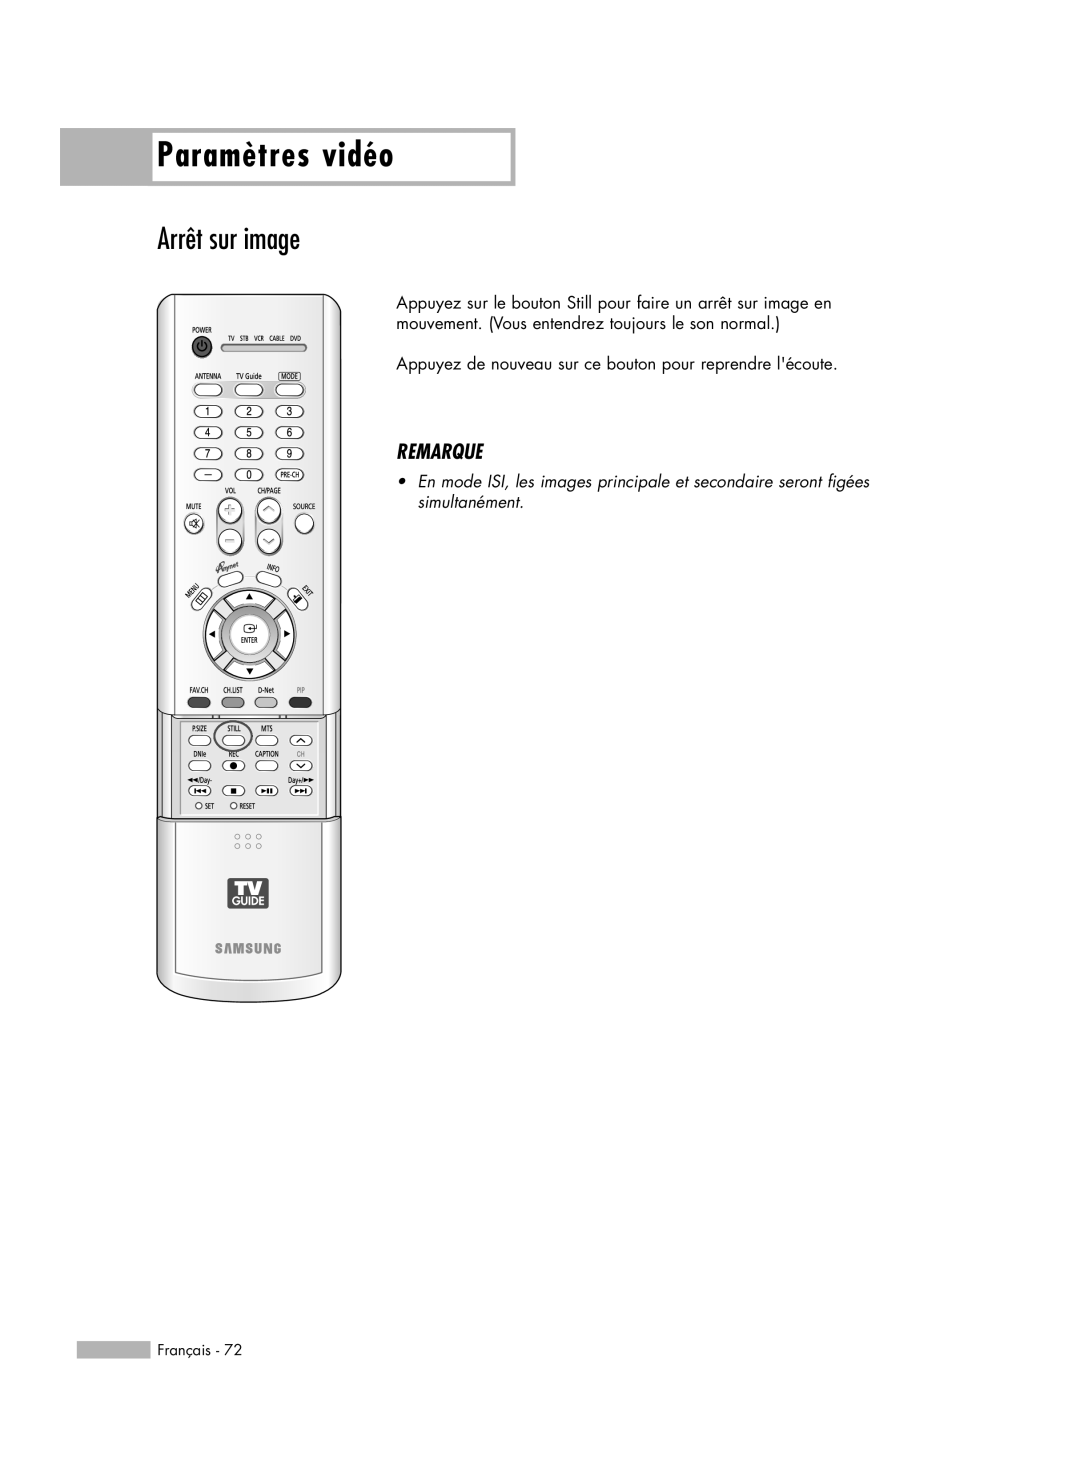 Samsung HL-R6178W Arrêt sur image, Paramètres vidéo, Remarque, Appuyez de nouveau sur ce bouton pour reprendre lécoute 